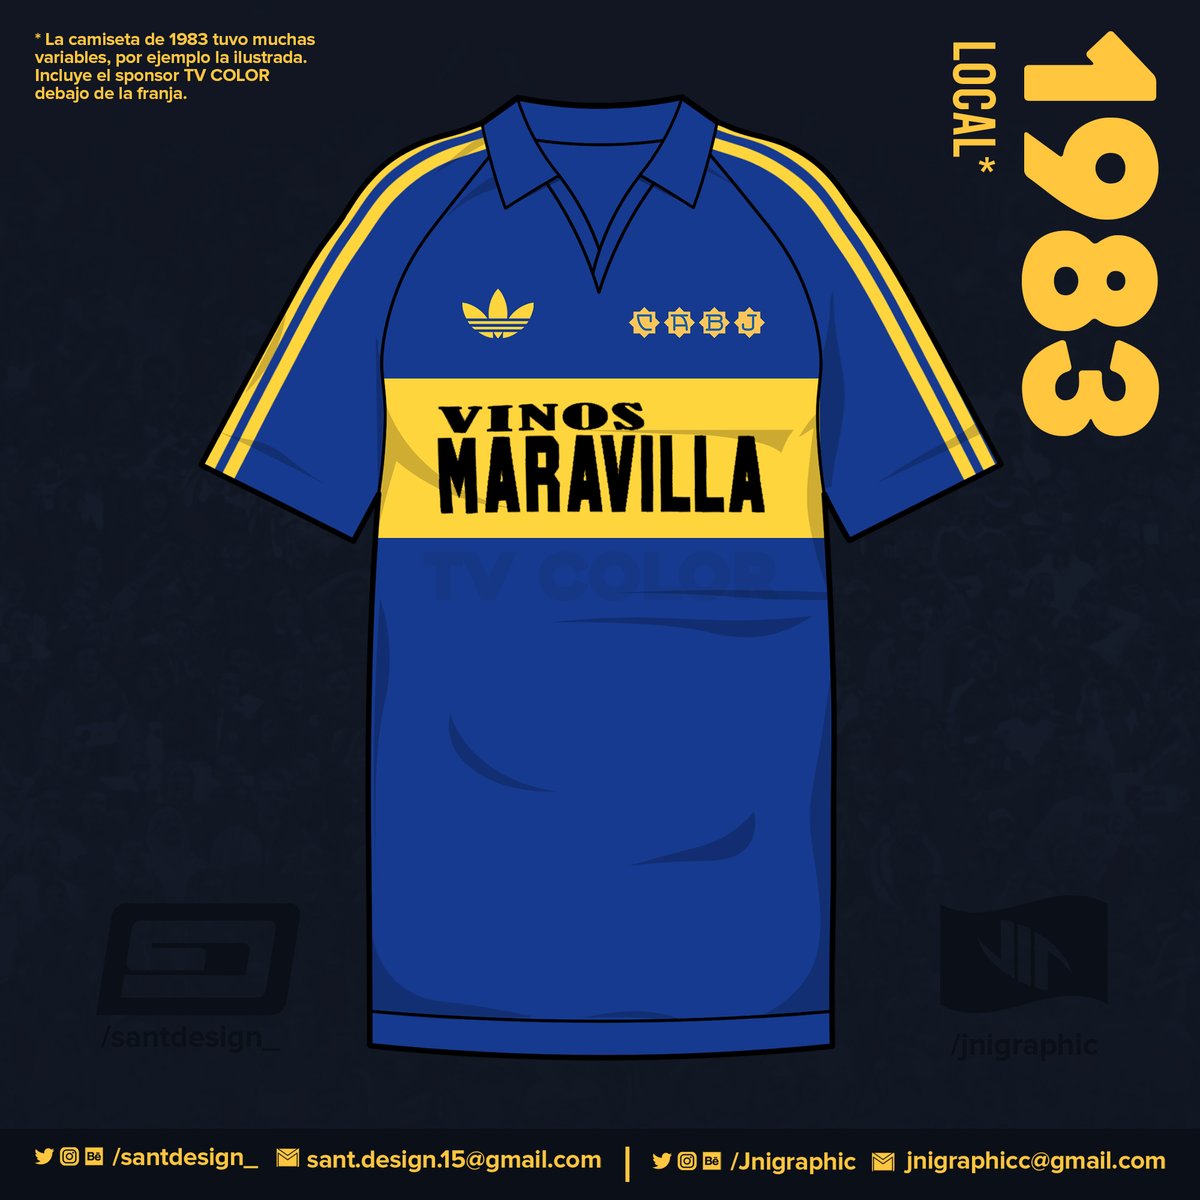 1983: Primer año en que Boca luce sponsor. Este modelo tuvo muchas variaciones, como el cuello, la ausencia del escudo, el tamaño del sponsor, o la aparición de un segundo sponsor, "TV COLOR", camuflado bajo la franja amarilla.